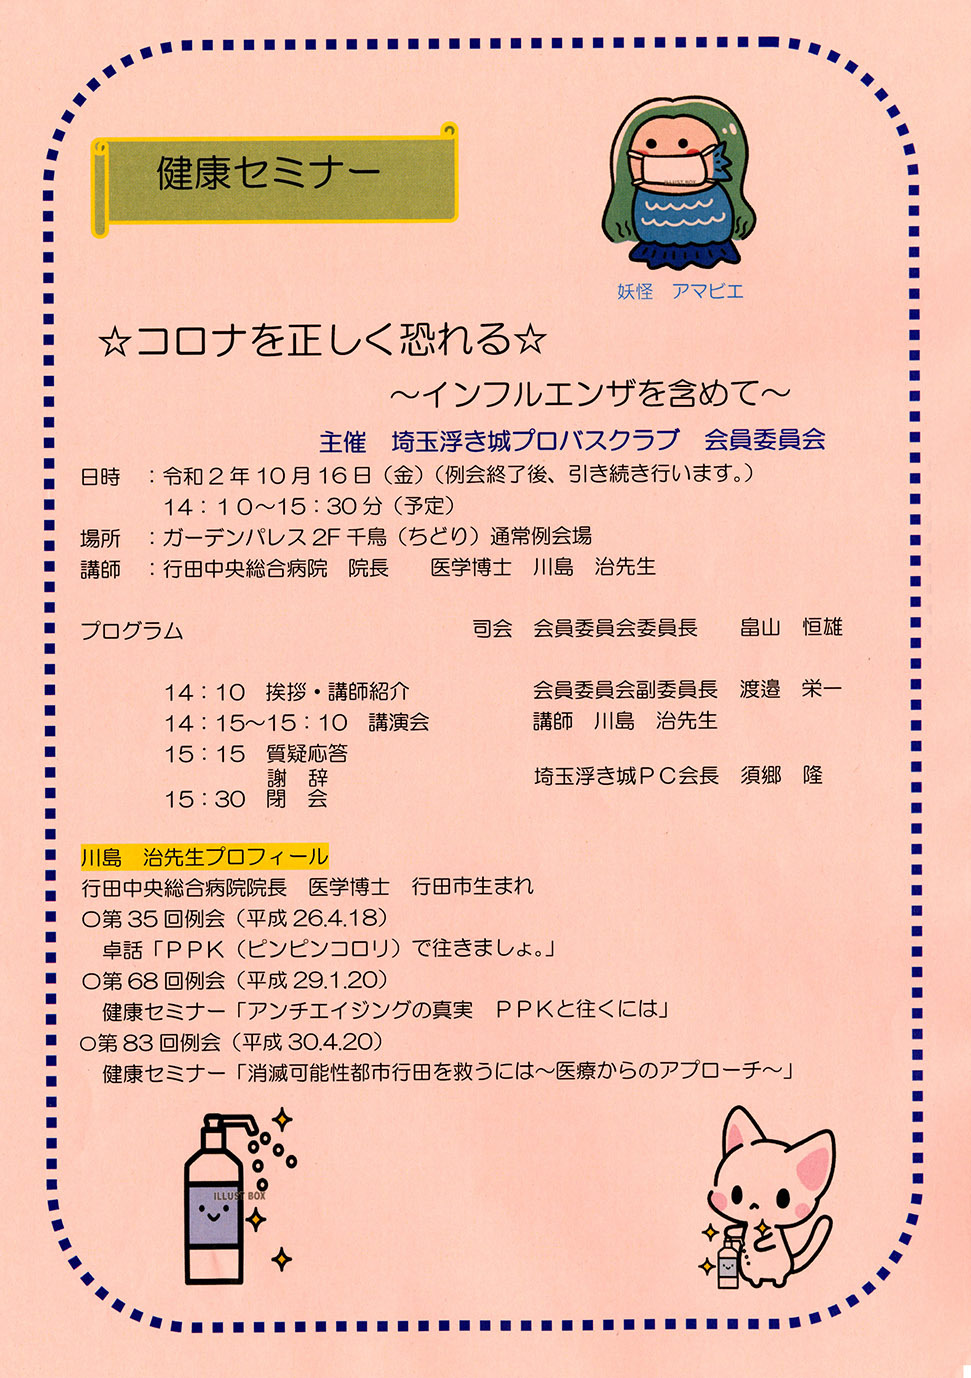 令和2年10月16日 健康セミナー開催 埼玉浮き城プロバスクラブ